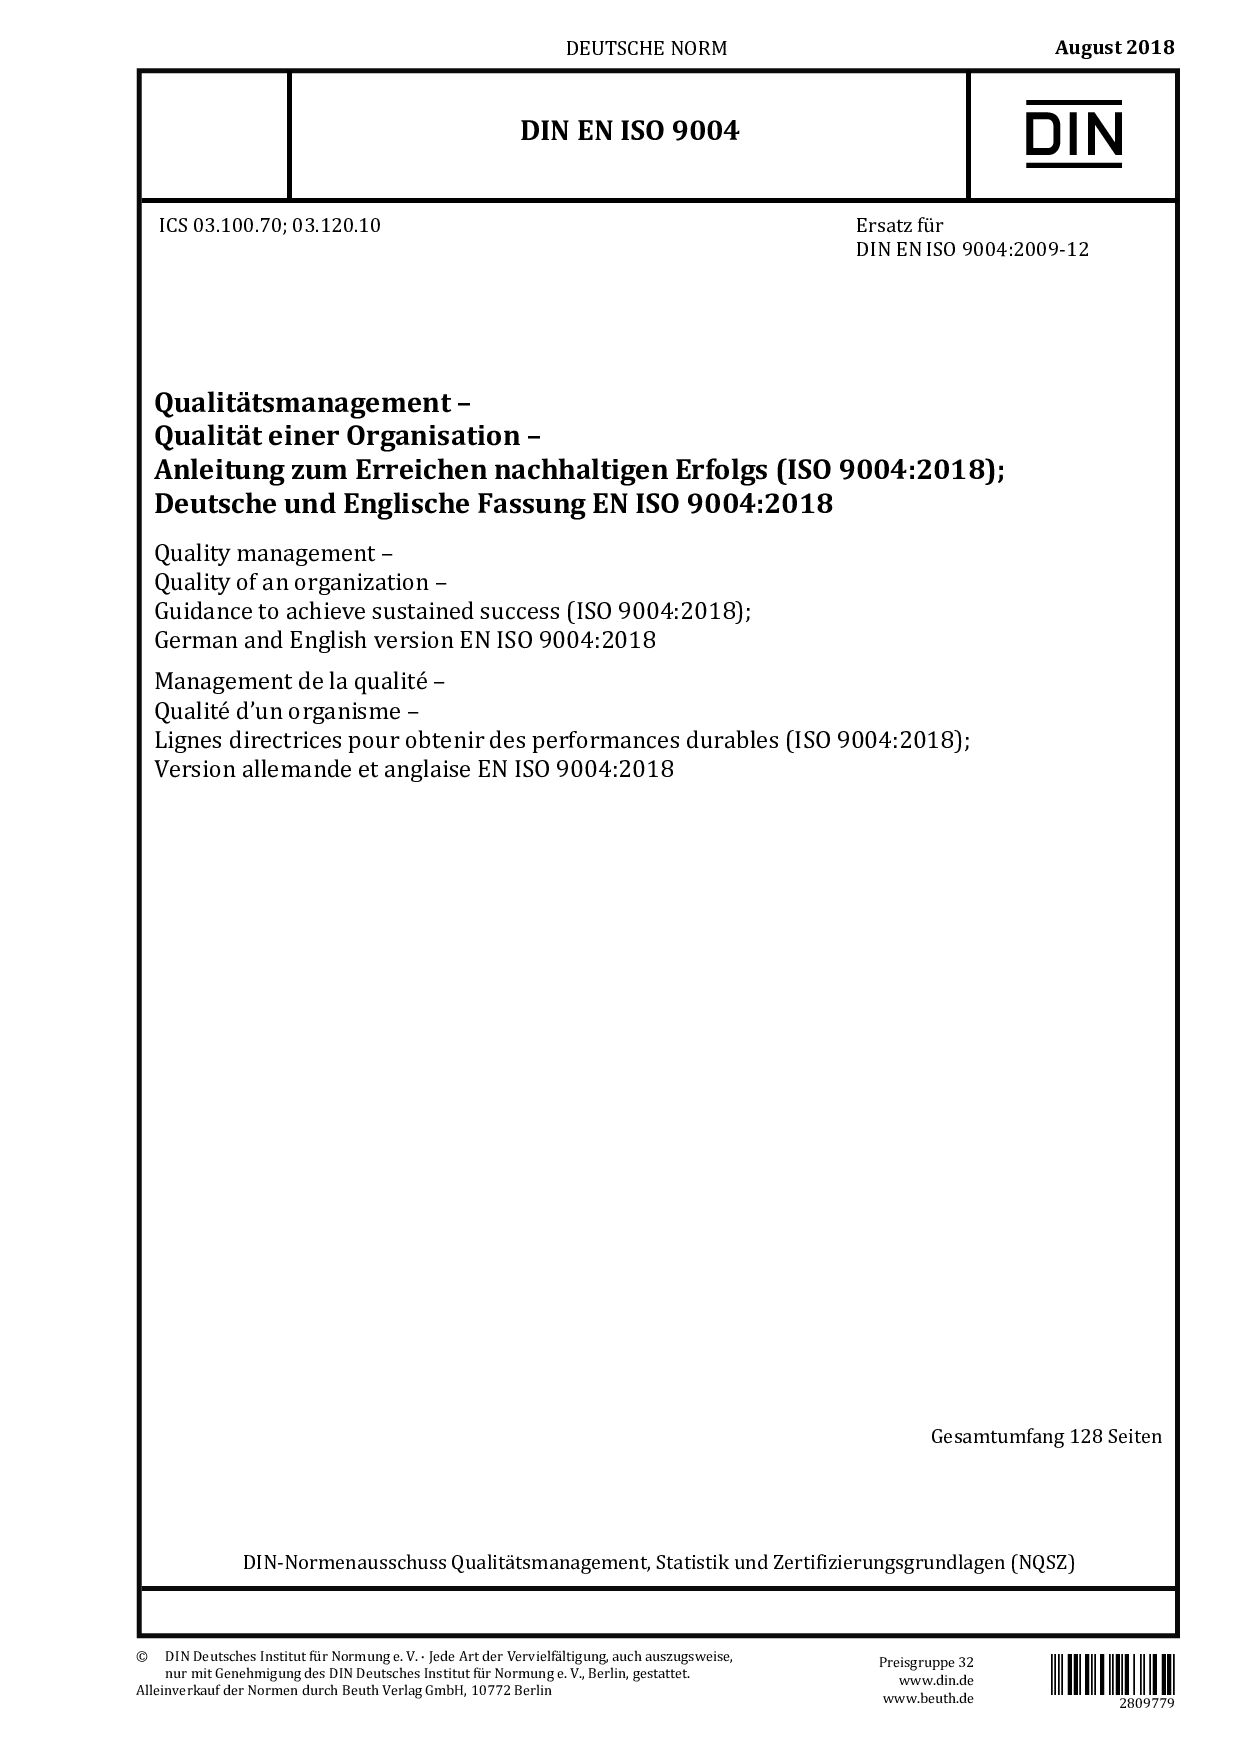 DIN EN ISO 9004:2018封面图